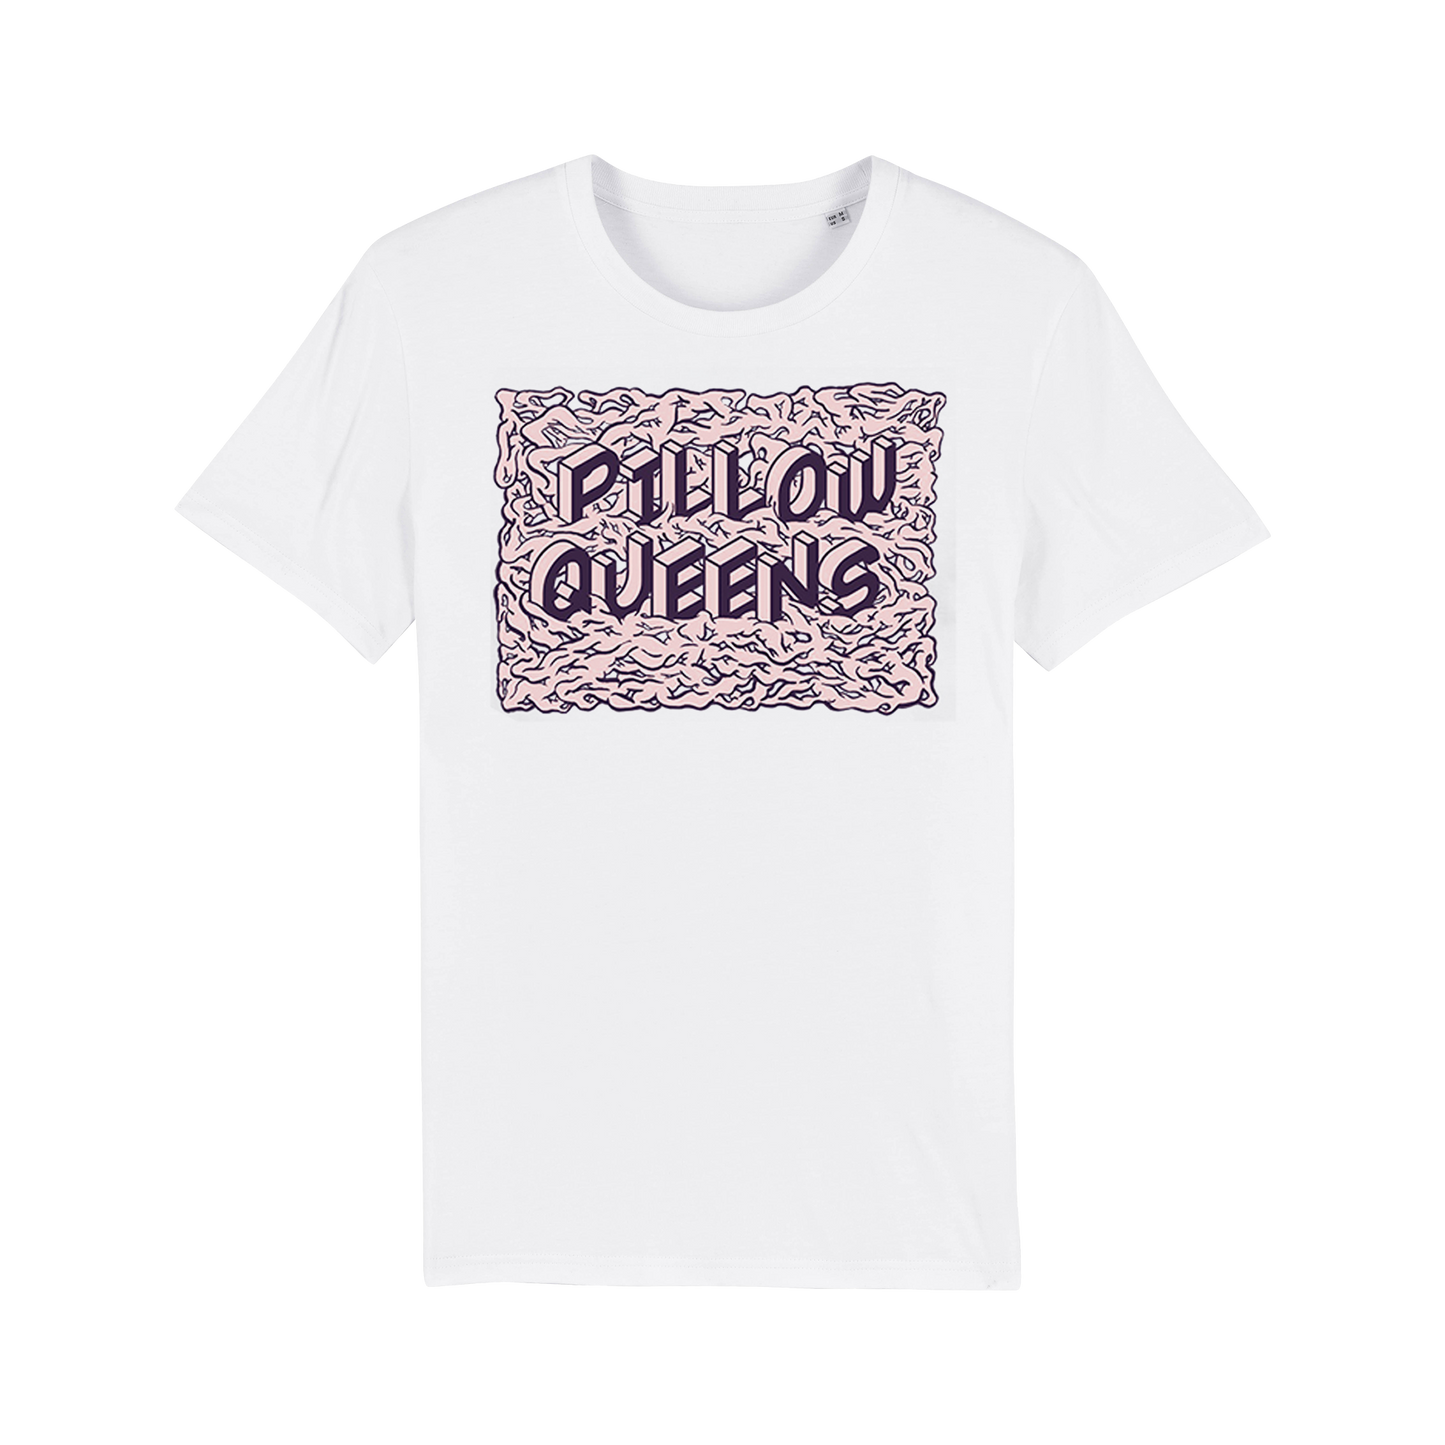 Pillow Queens White T-shirt